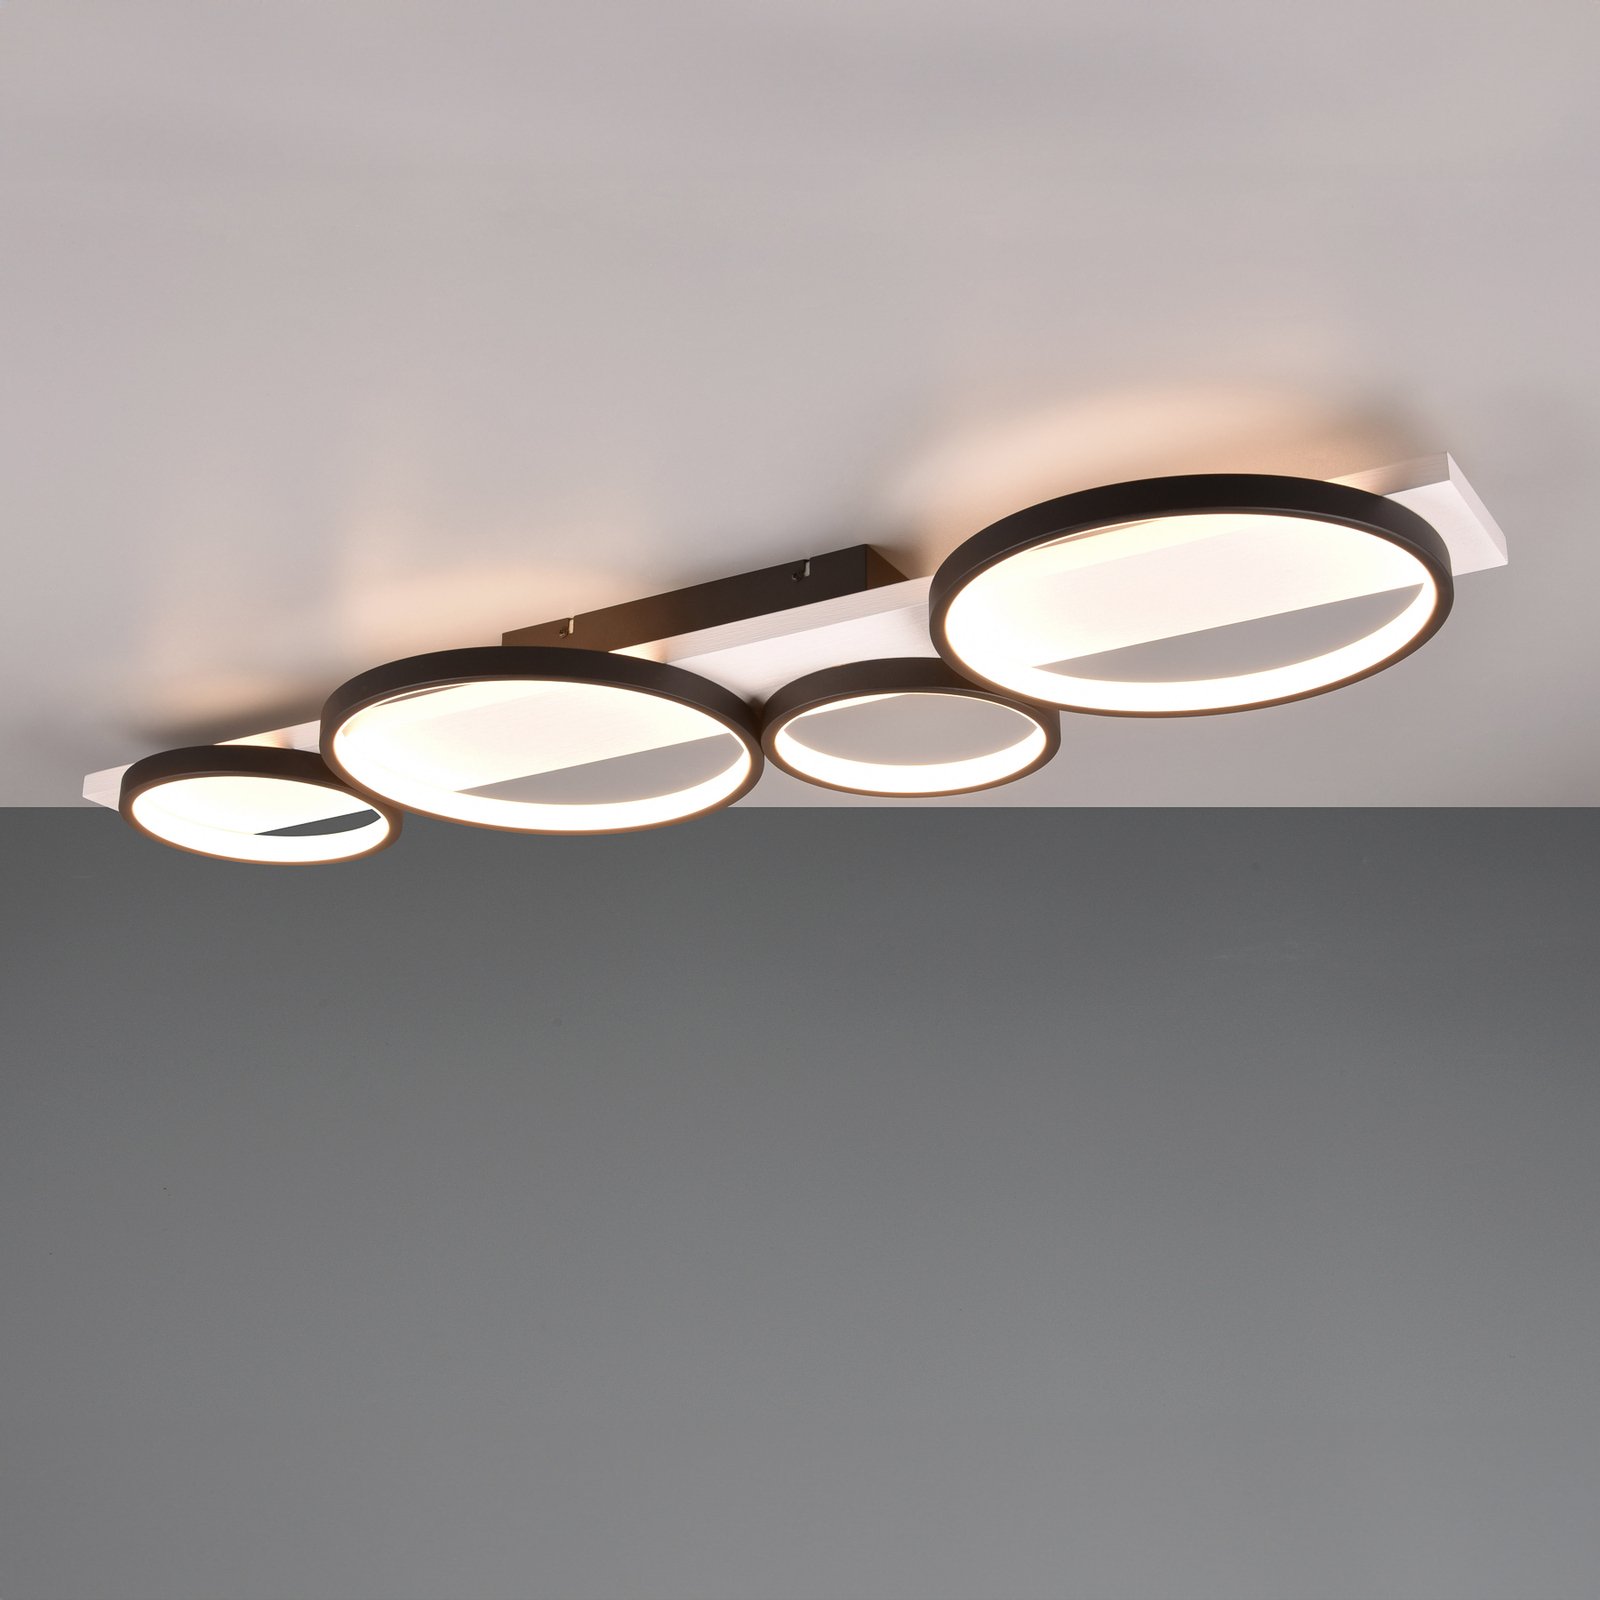 Medera LED ceiling light, 4-bulb, black